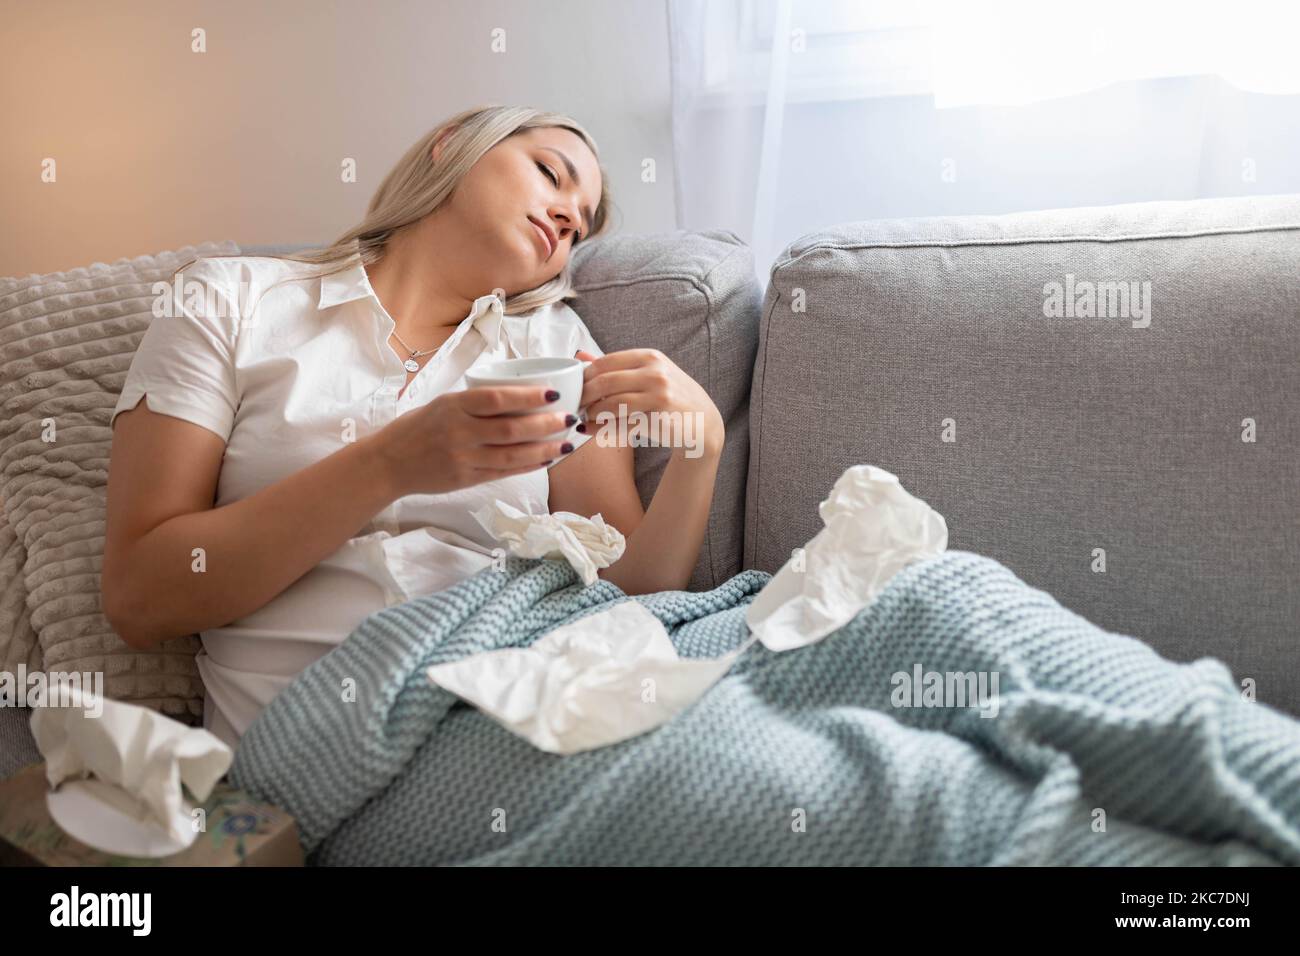 Kranke Frau, die unter der Decke sitzt. Kranke Frau mit saisonalen Infektionen, Grippe, Allergie im Bett liegend. Kranke Frau, die mit einer Decke im Bett lag Stockfoto